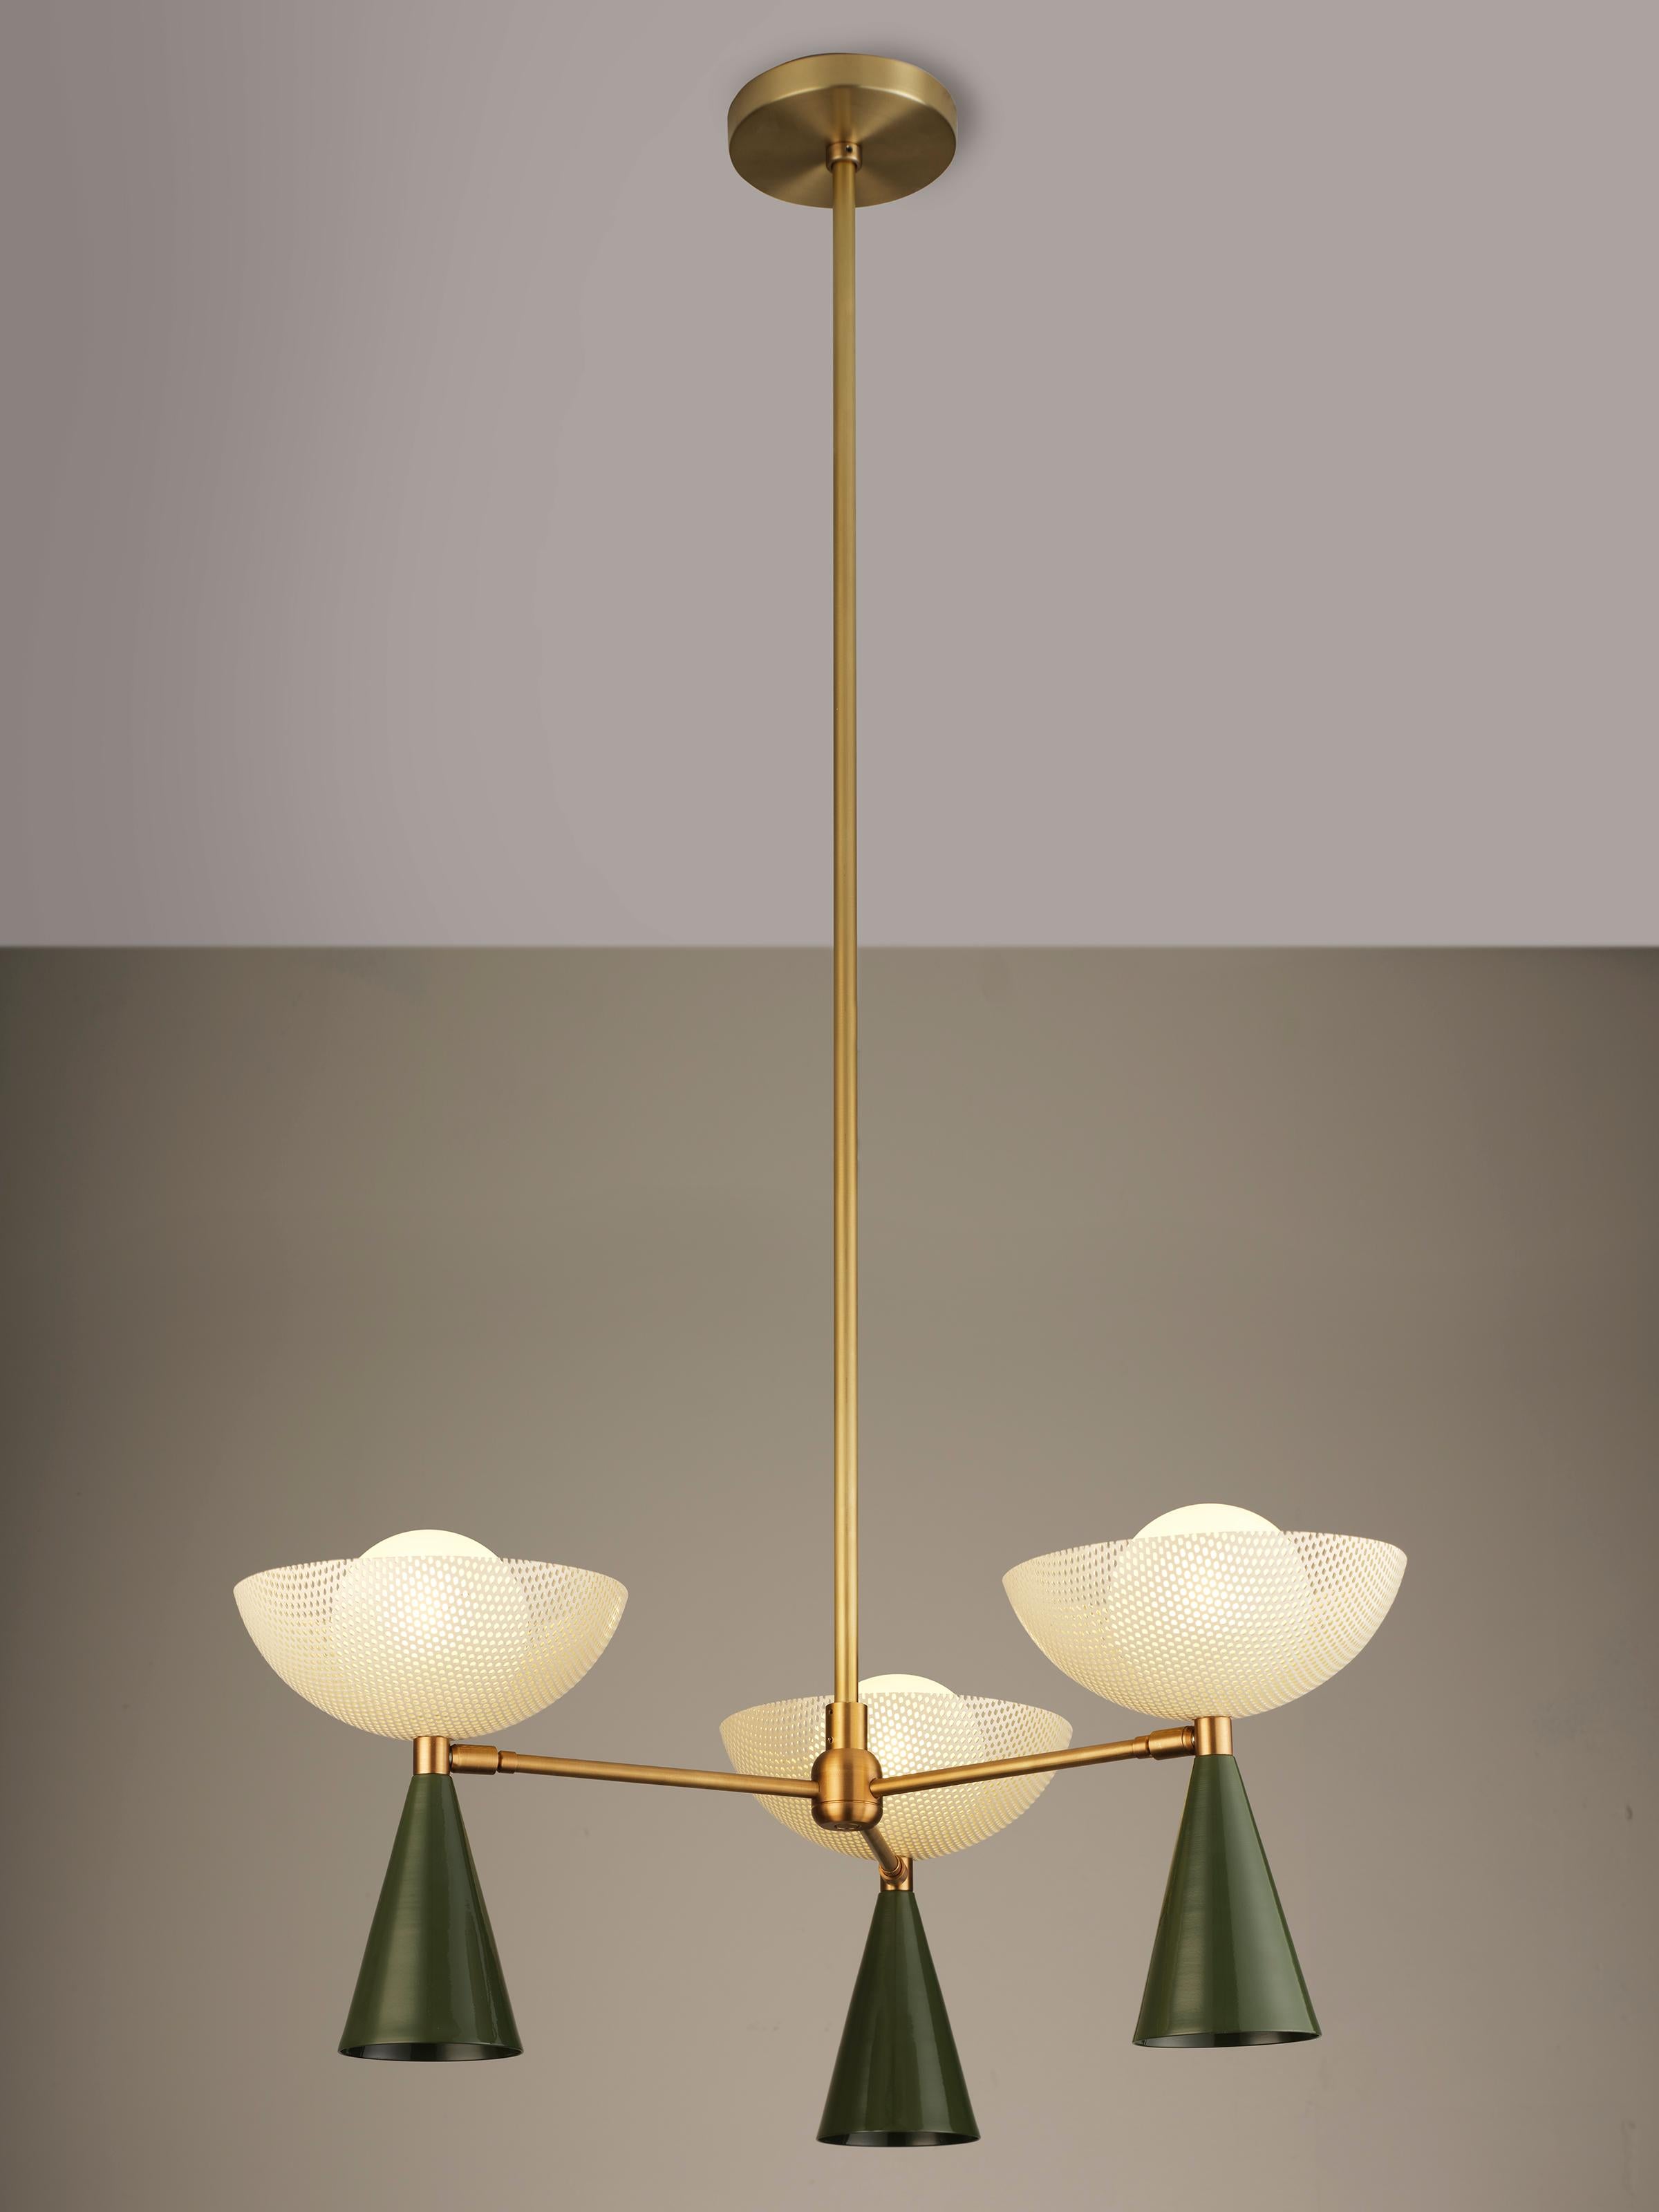 Die 3-Arm-Deckenleuchte Molto bietet eine frische Interpretation des italienischen Modernismus mit einem Schirm aus gesponnenem Metallgeflecht, der von Mathieu Matégots charakteristischem Medium Rigitulle inspiriert ist. Der Molto ist zugleich